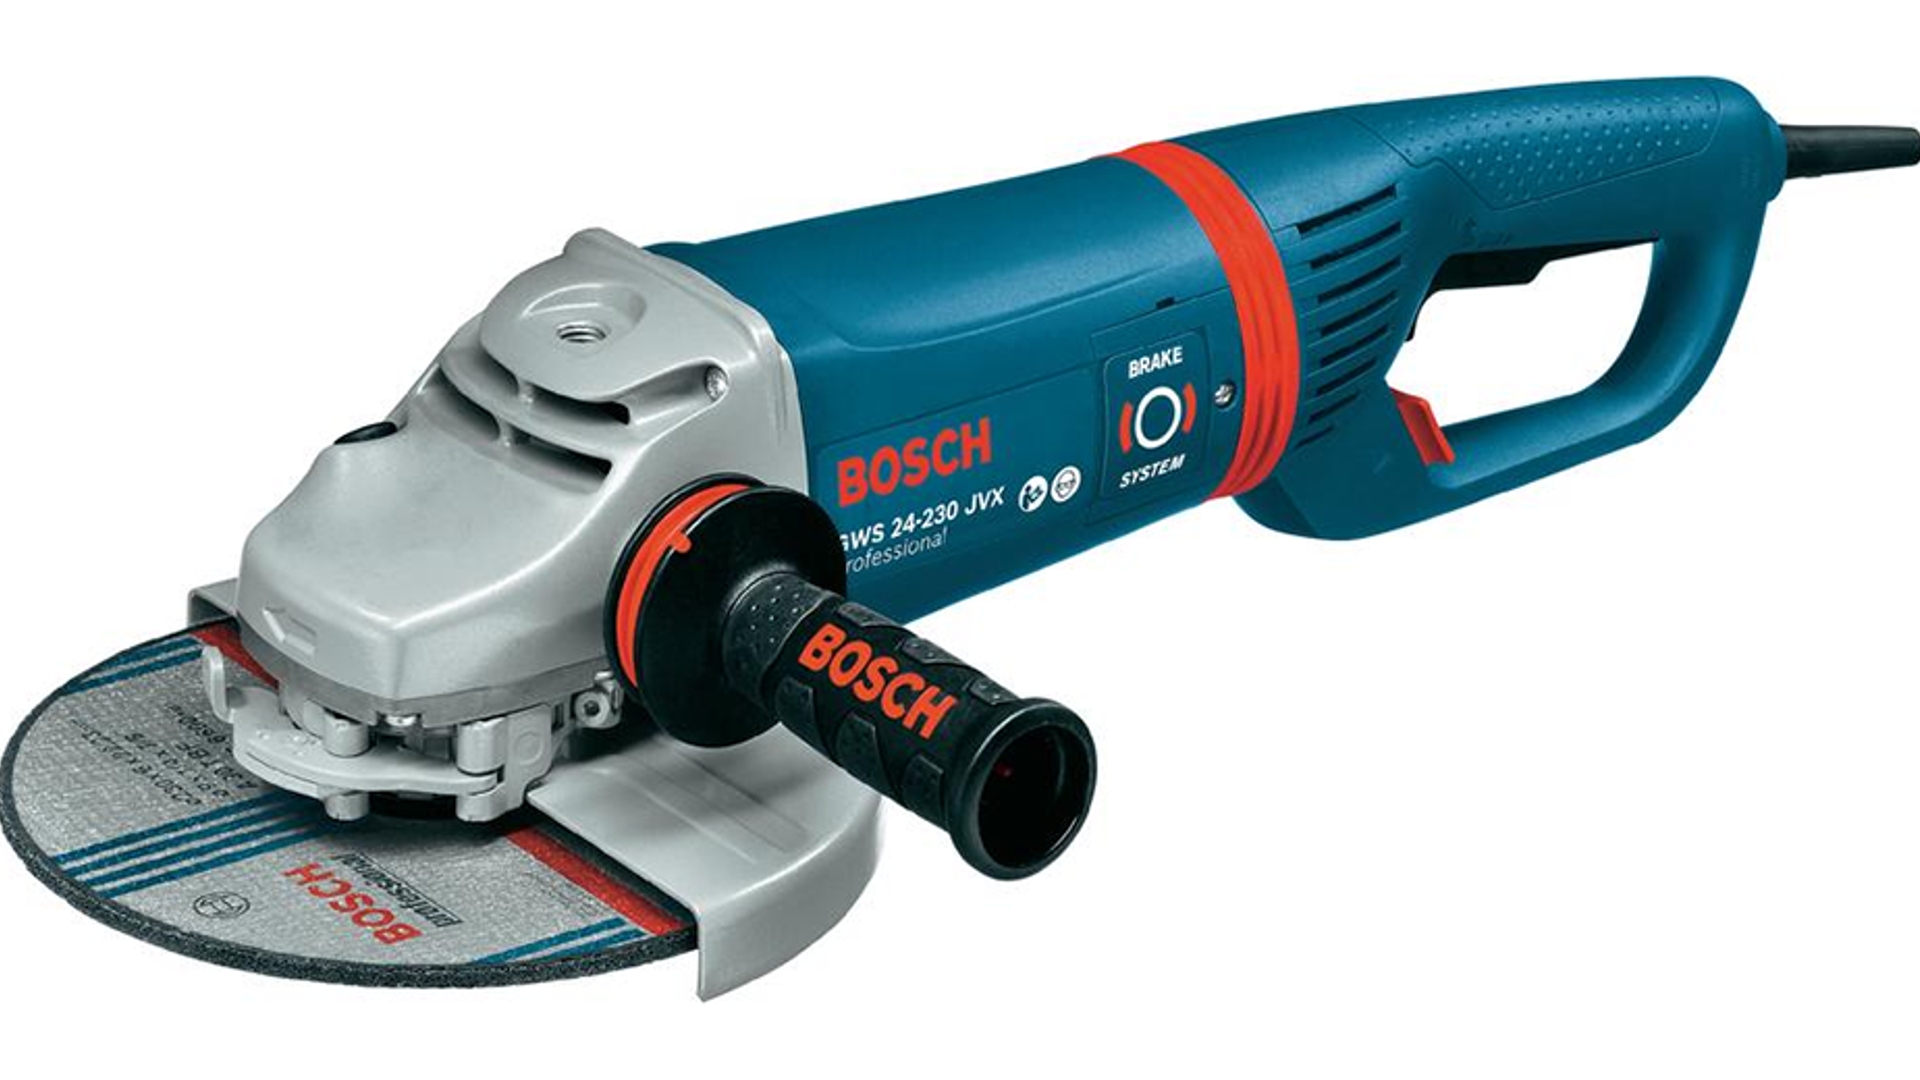 Bosch haakse slijpmachine 930x520